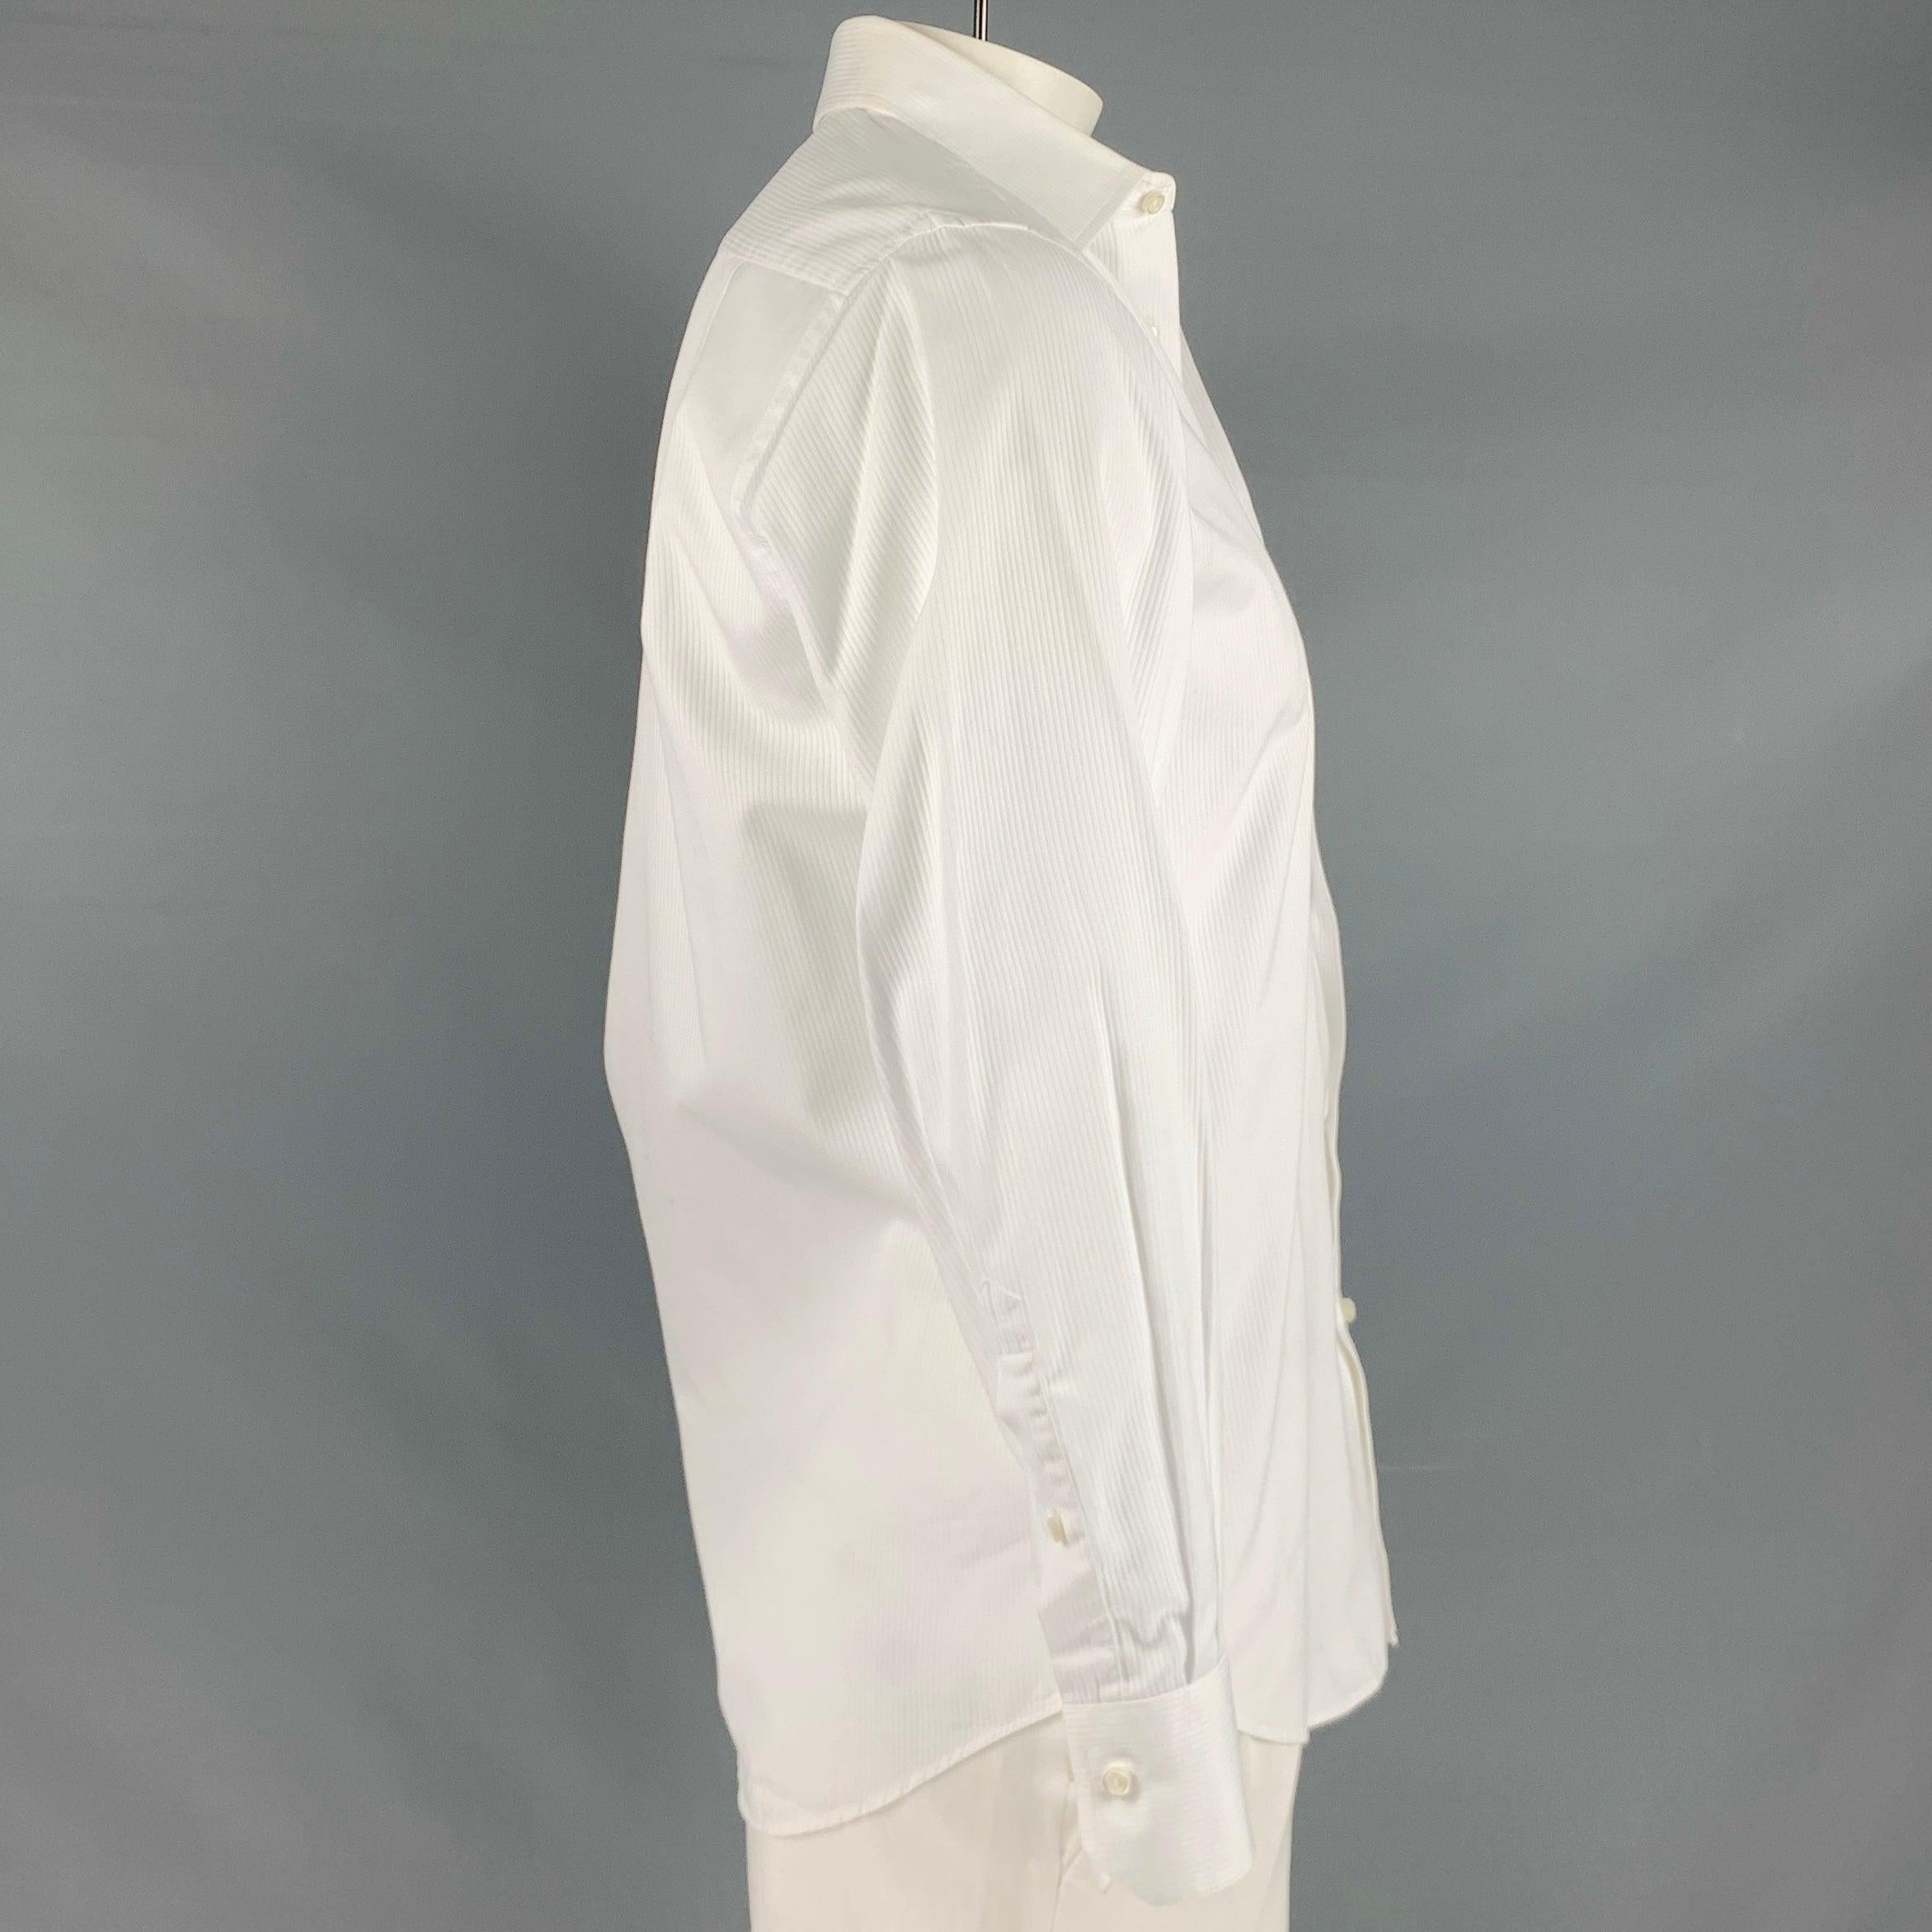 Langärmeliges Smokinghemd von HUGO BOSS aus weißem Baumwollstoff mit vertikalem Streifenmuster, einer Tasche und Knopfverschluss. Sehr guter gebrauchter Zustand. Geringfügige Mängel. 

Markiert:   15 / 32/33 

Abmessungen: 
 
Schultern: 16,5 Zoll